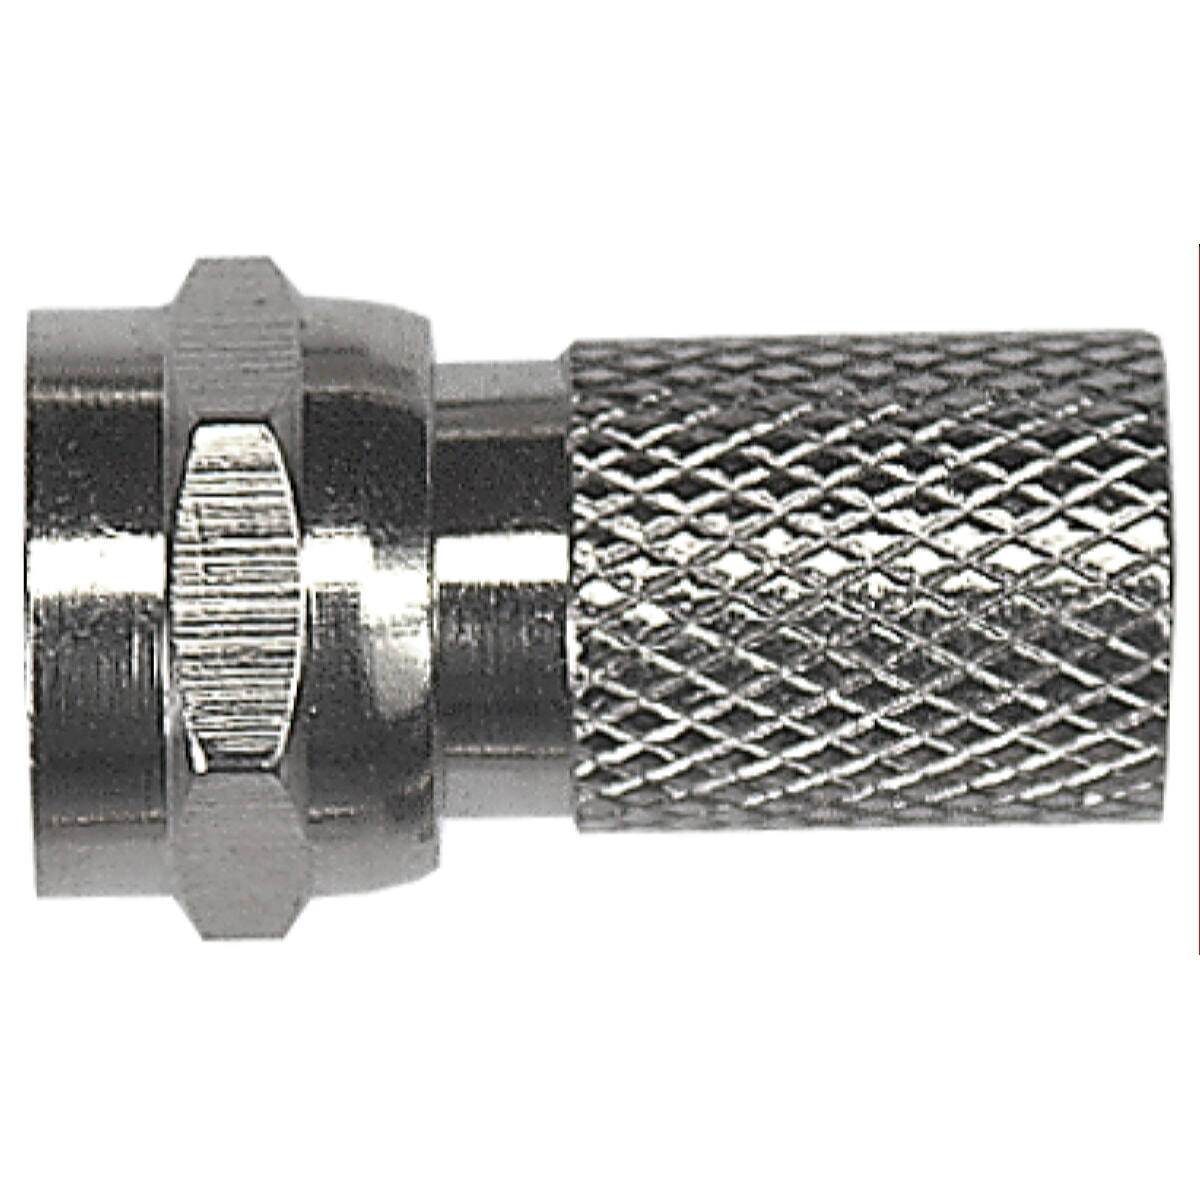 Axing F-Stecker mit Schraubanschluss CFS 0-00 für Kabel mit 7 mm Dmr. CFS00000